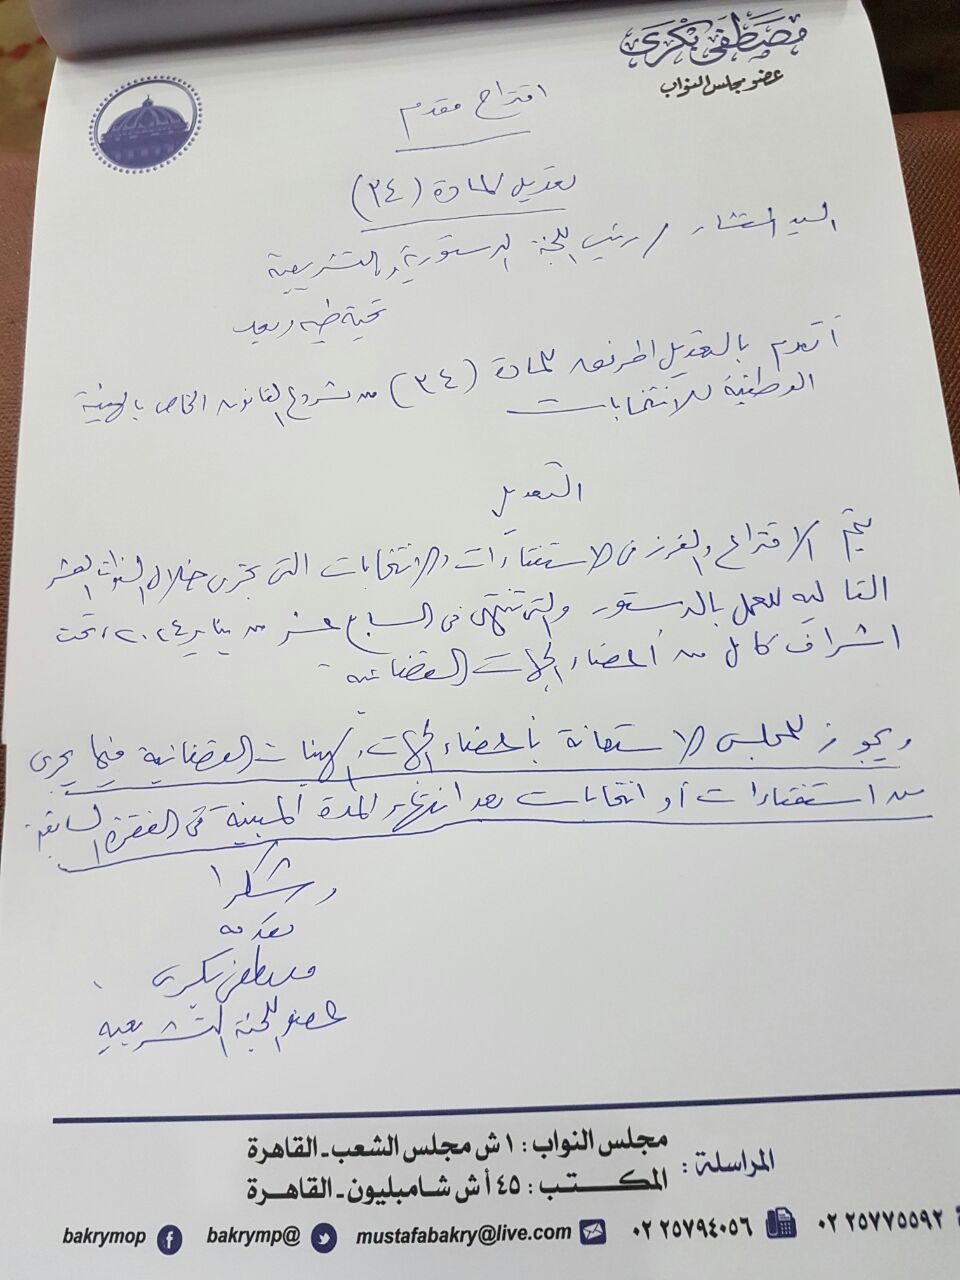 مصطفى بكرى يقترح تعديلا بقانون الوطنية للانتخابات يجيز الاستعانة بالقضاء بعد 10 سنوات